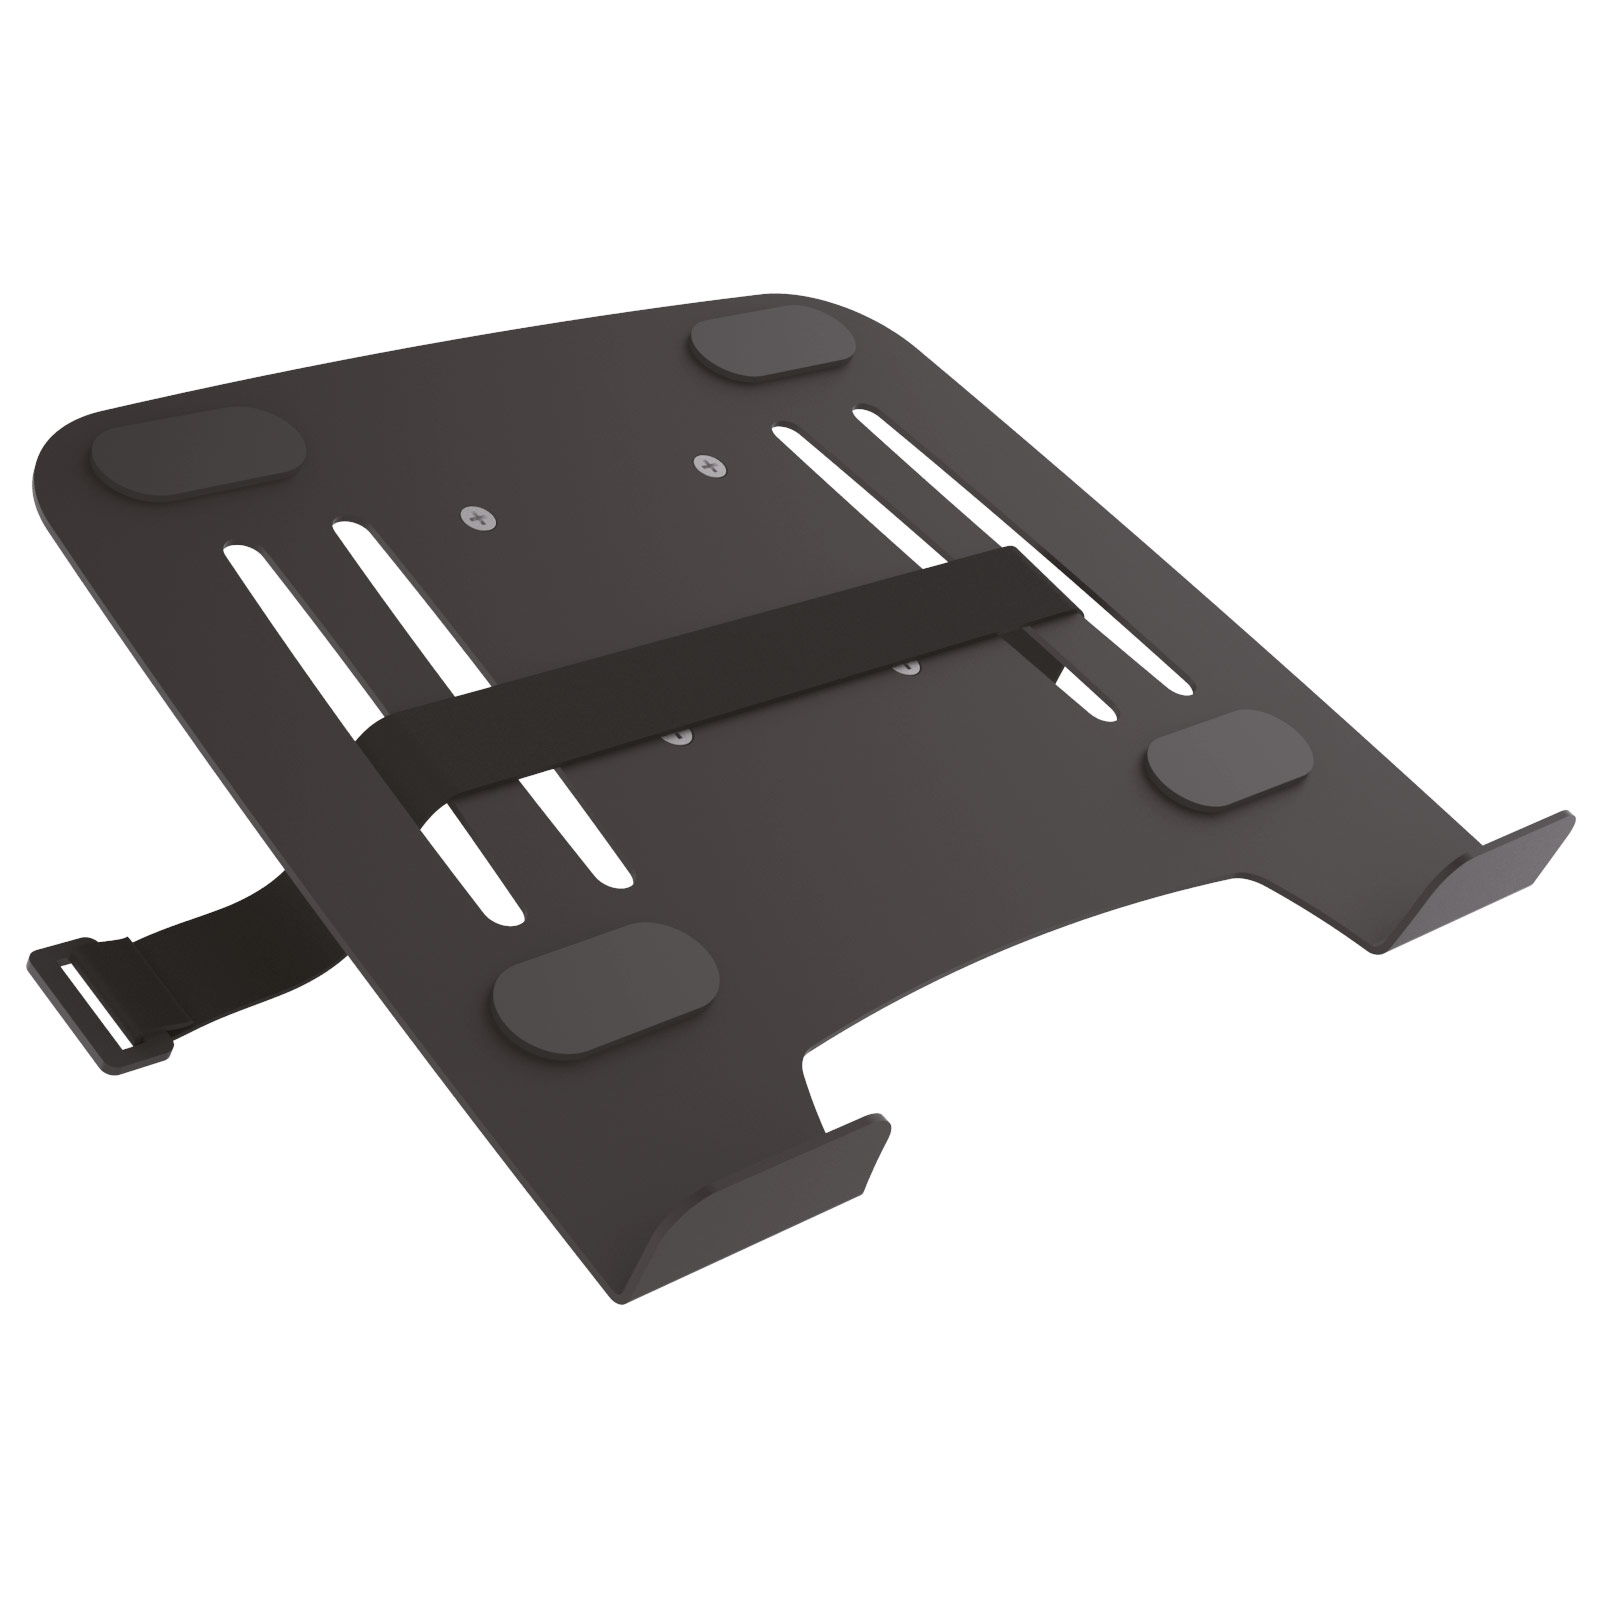 Adapter Halterung für Wandhalterung Universal - schwarz IP3BK INSTRUMENTS mit Notebook DRALL 75 - Laptop Laptop Modell: VESA Ablage